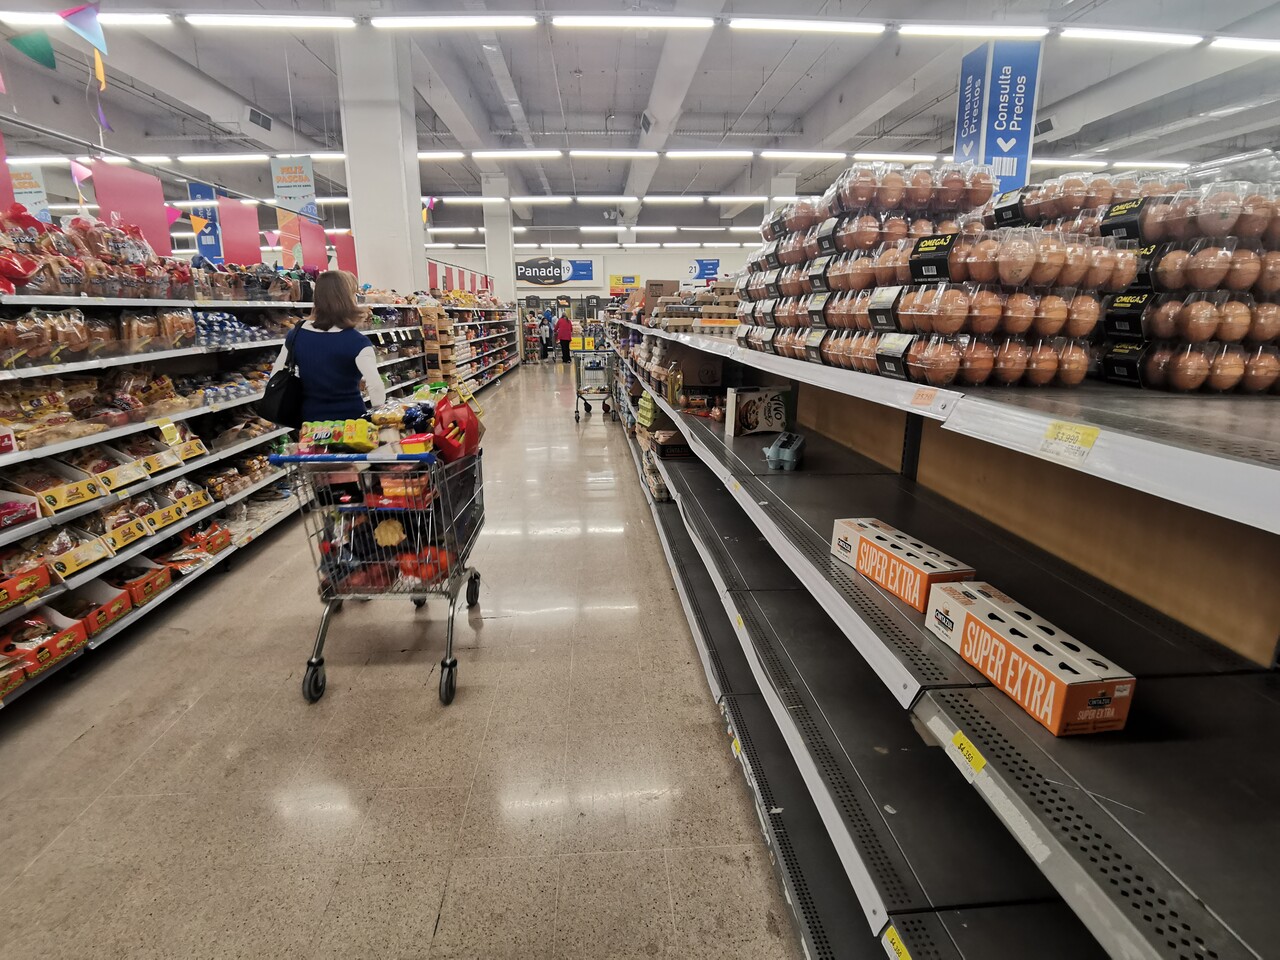 Cadena de supermercados congela precios